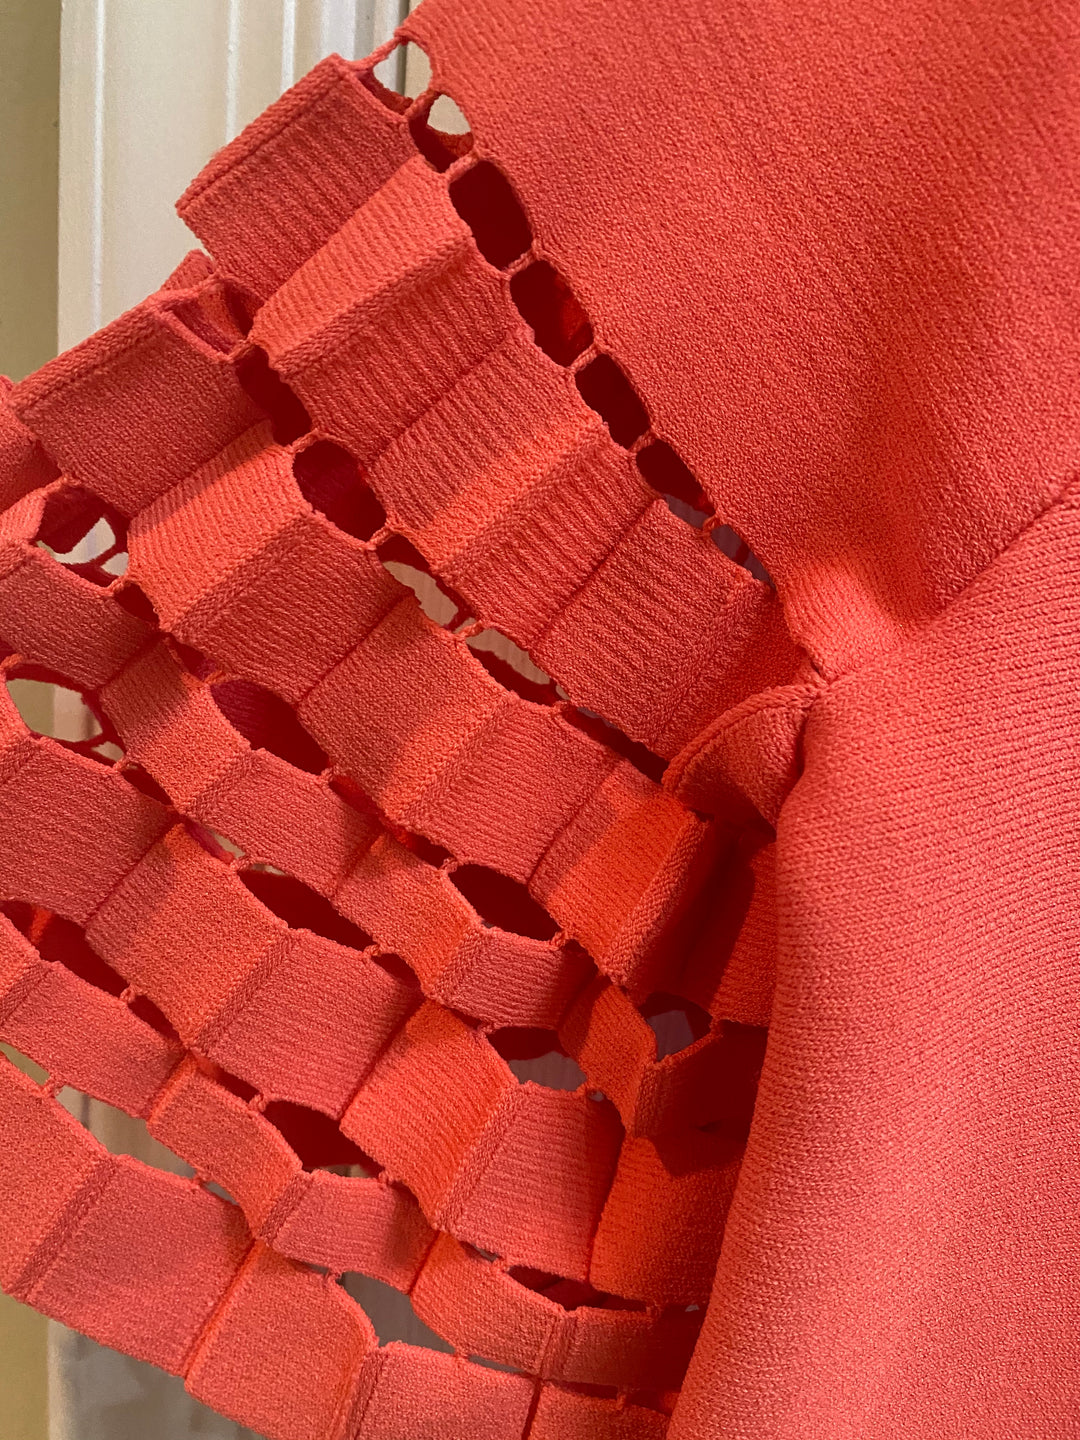 Lela Rose Accordian Detail Tunic Dress Size M